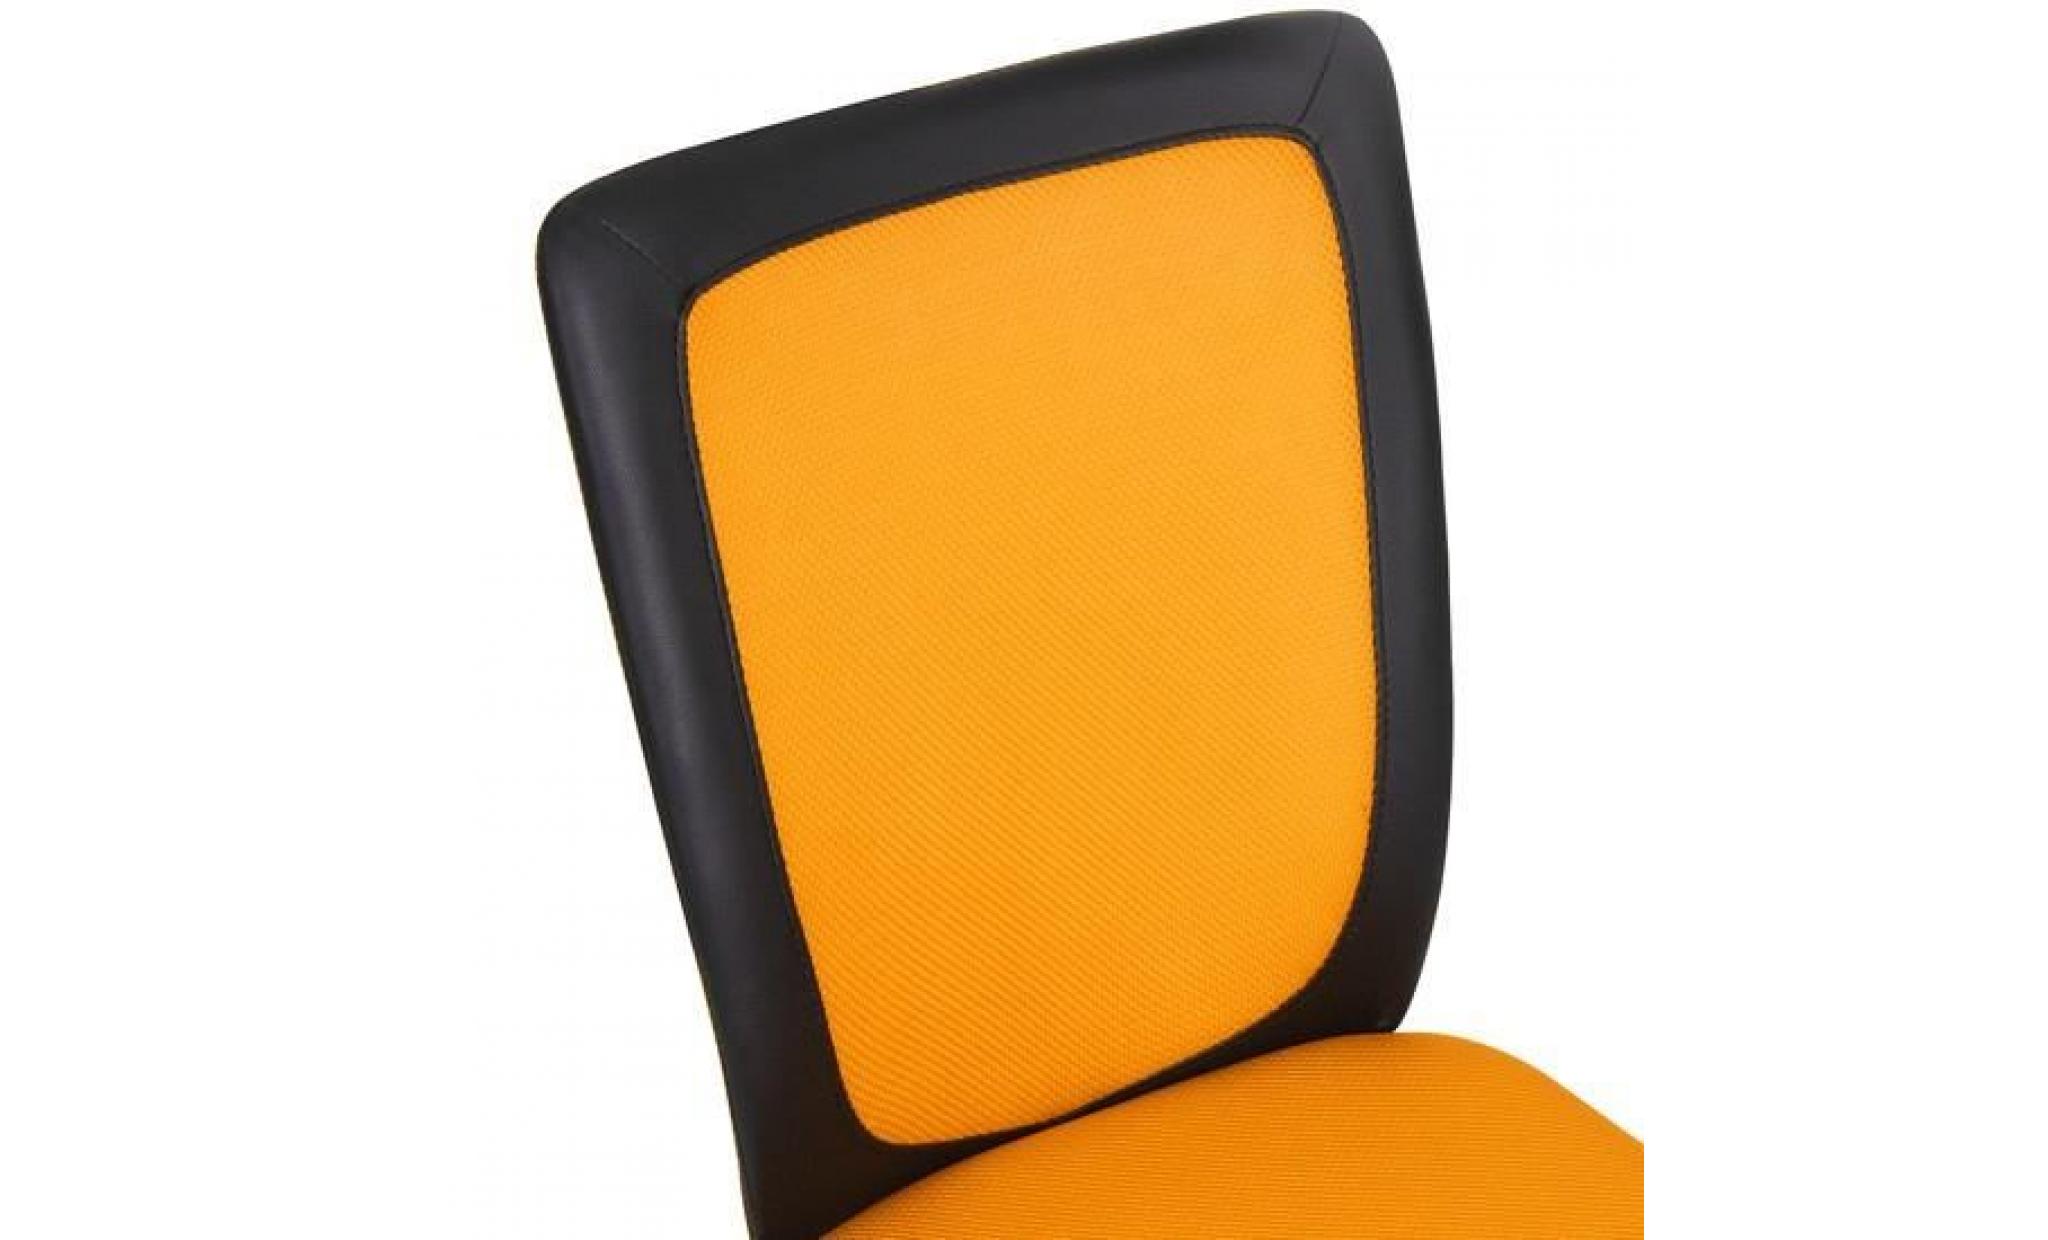 chaise de bureau pivotante pour enfant en orange pas cher